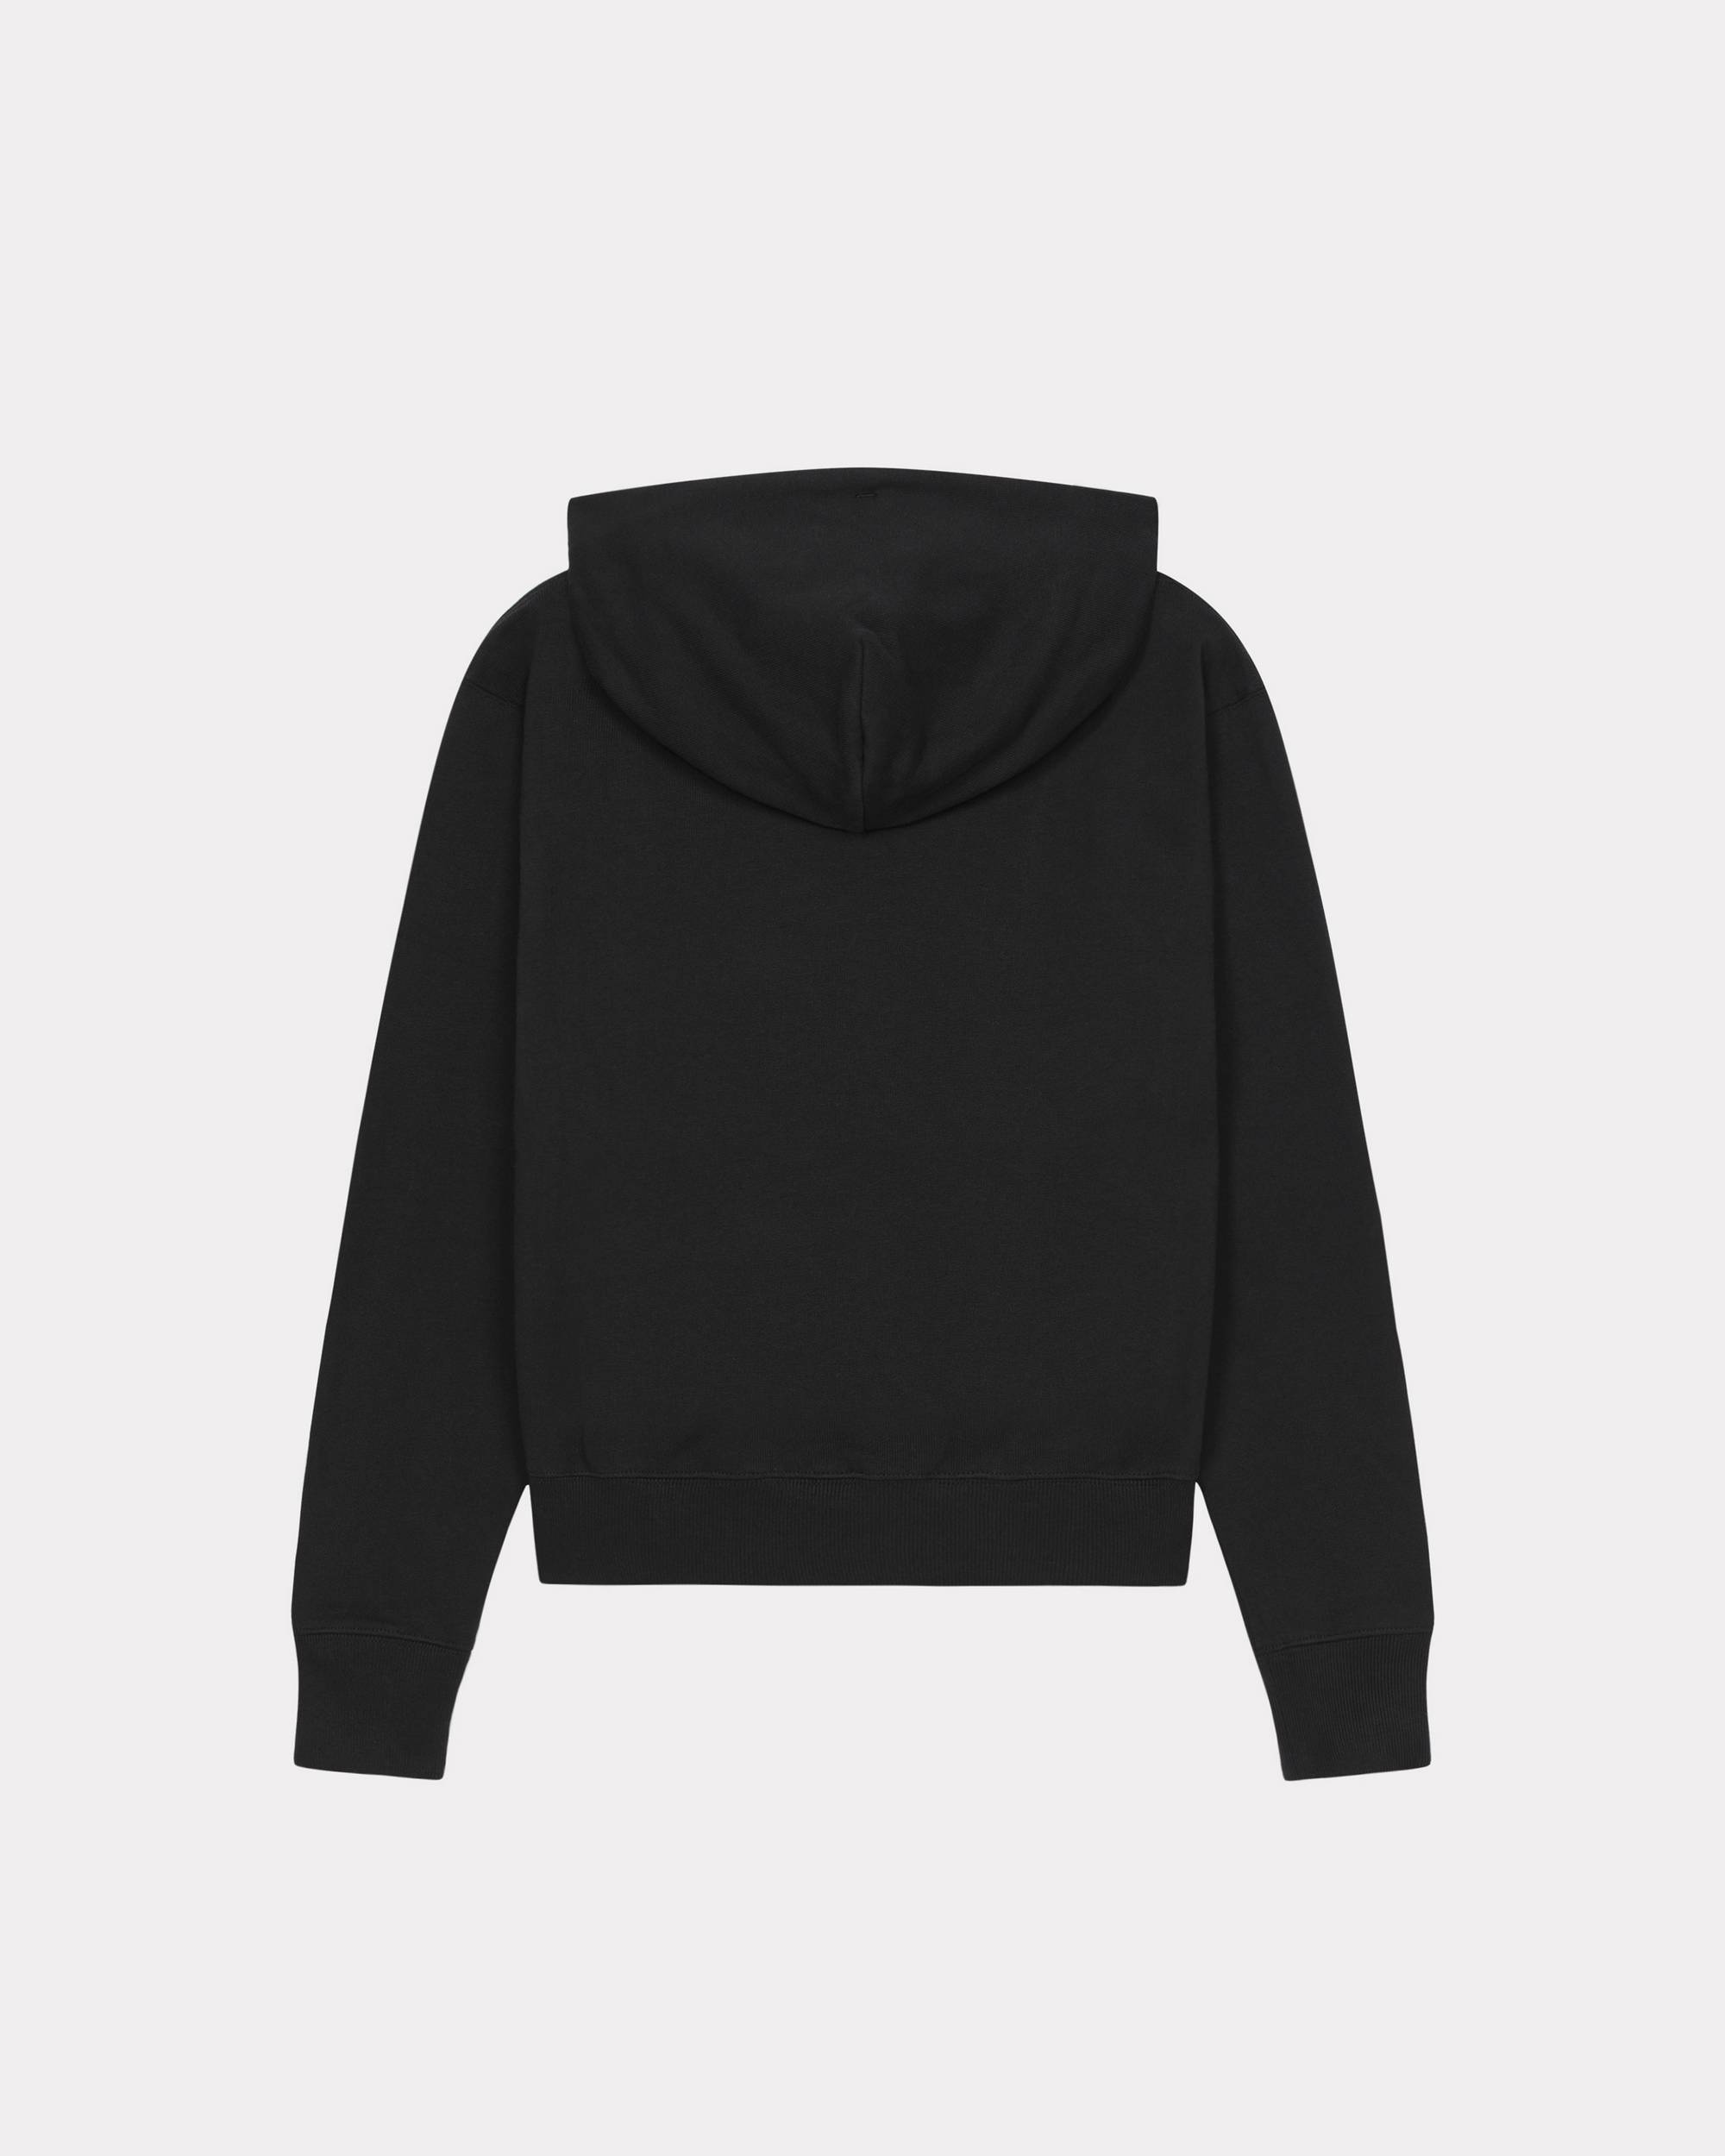 'BOKE FLOWER' hooded sweatshirt - 2